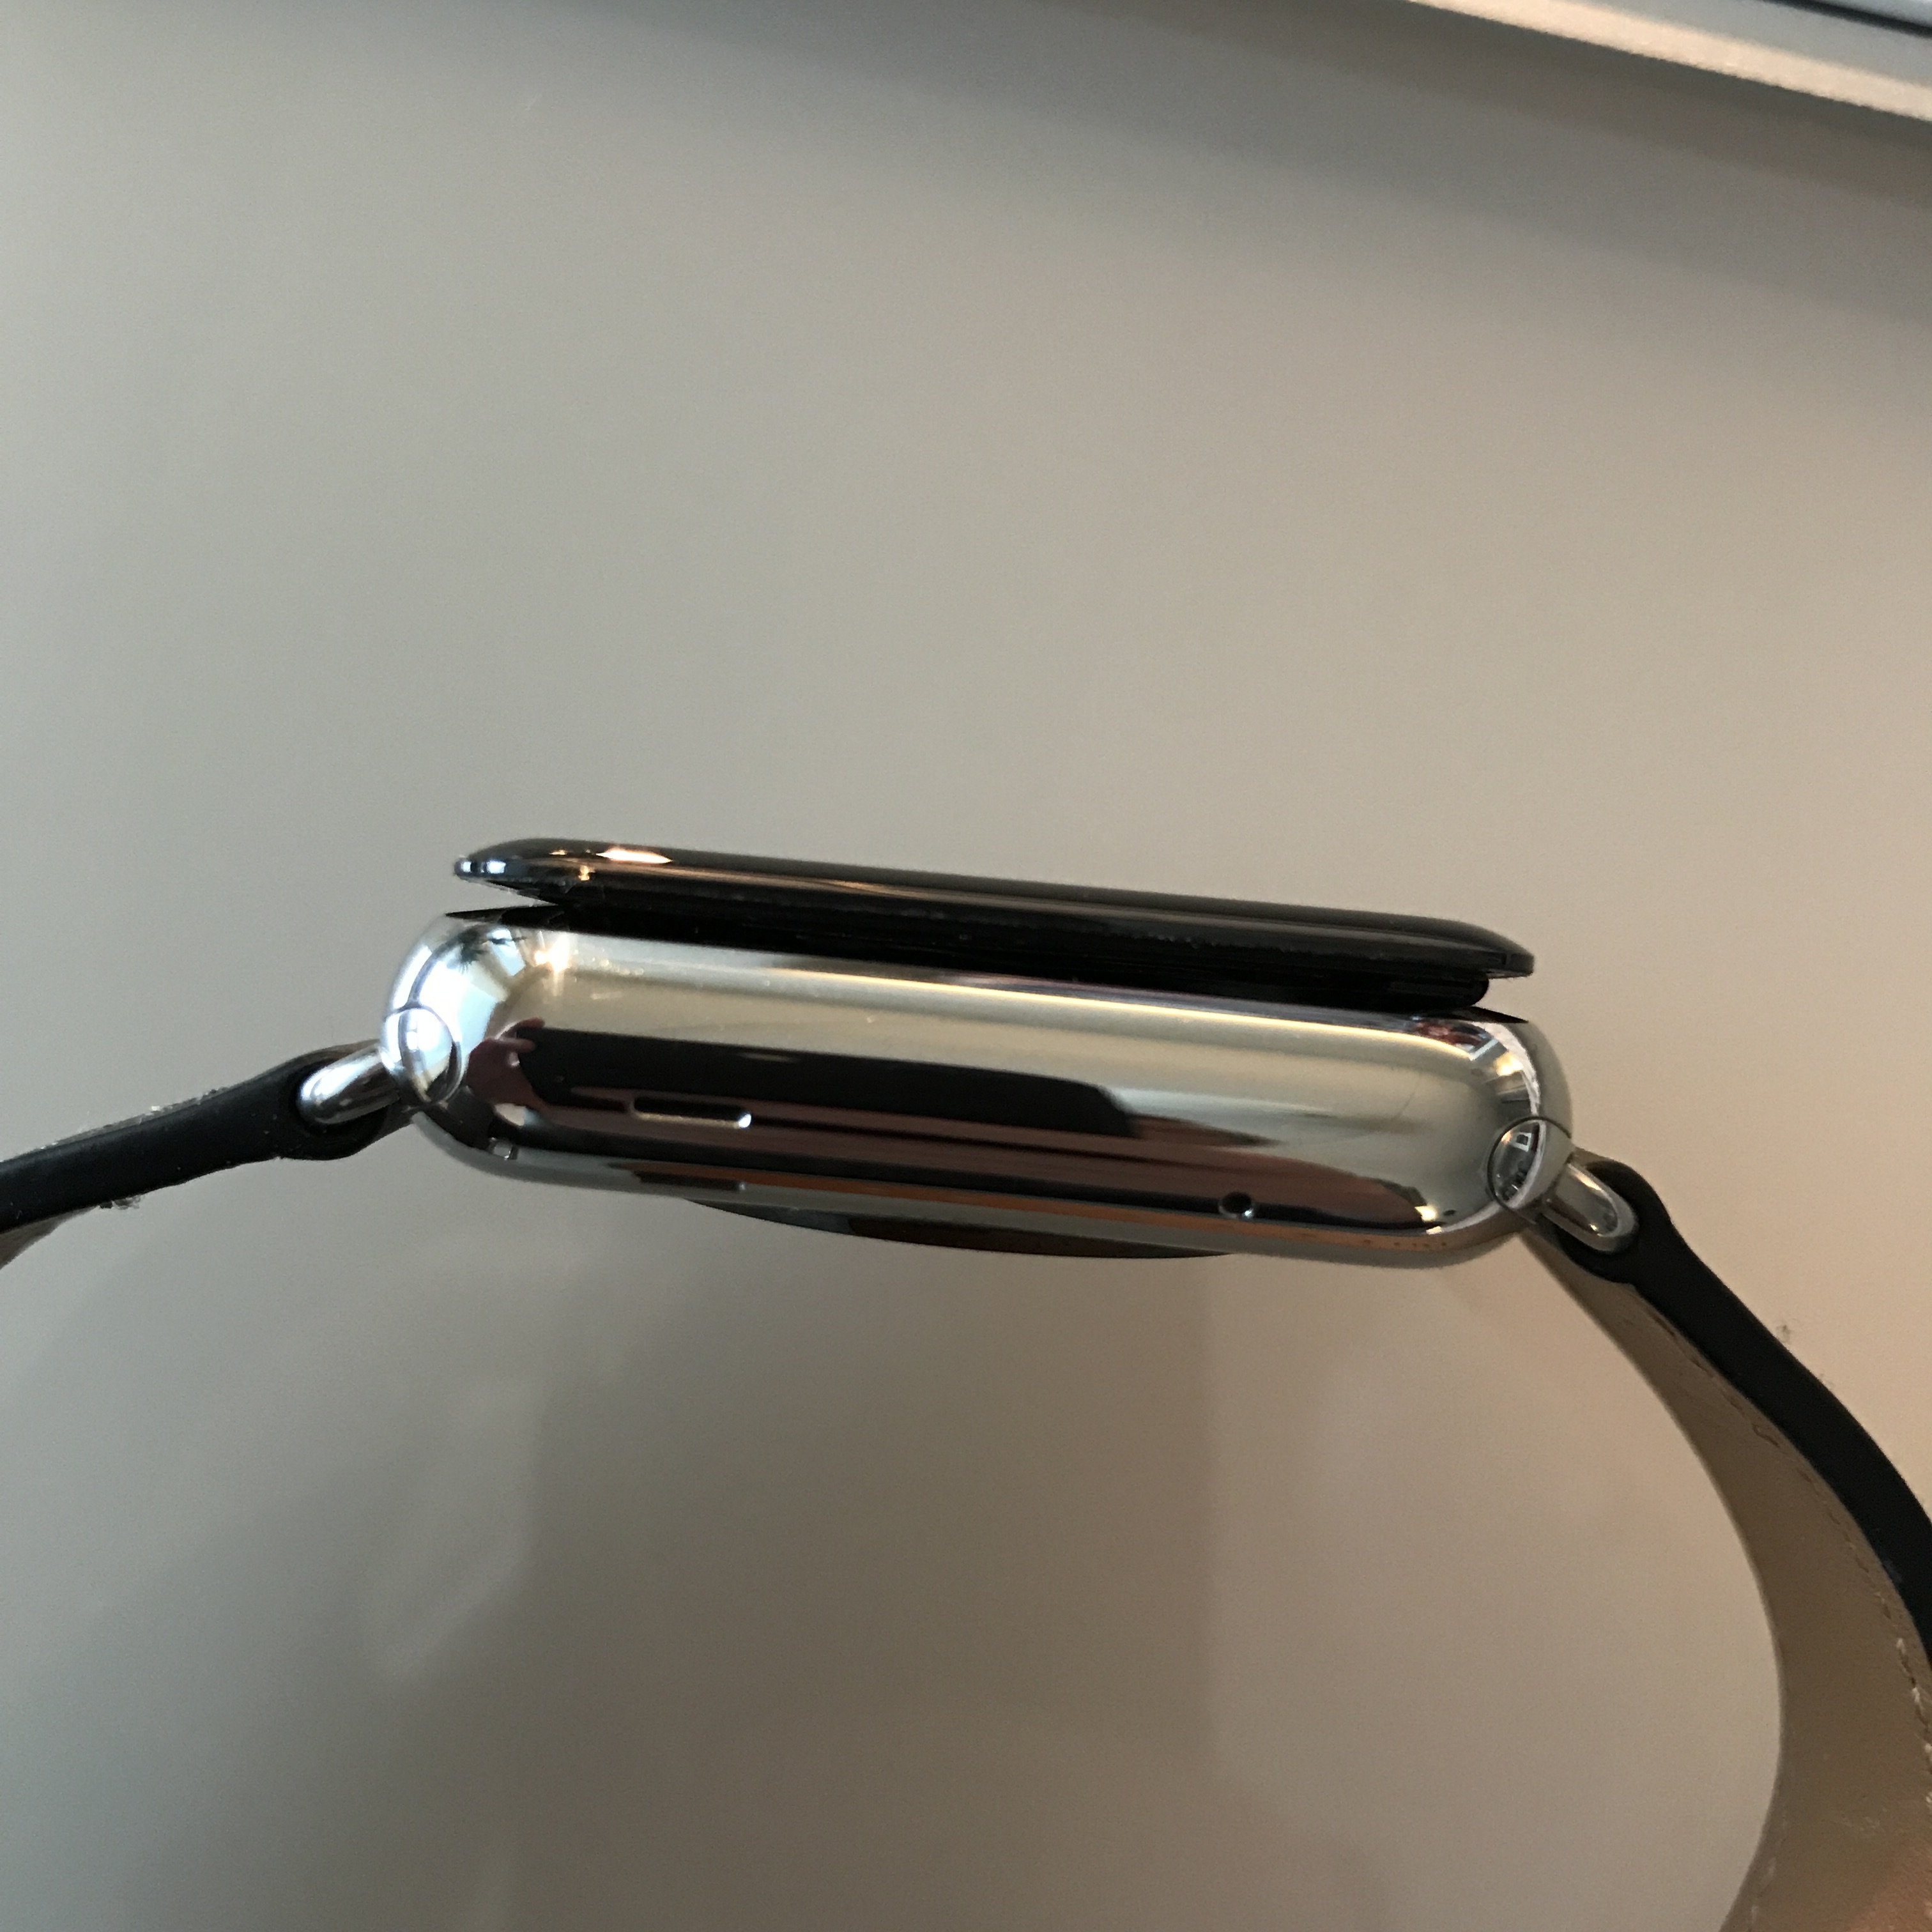 Apple citata in giudizio per il gonfiore alle batterie di Apple Watch